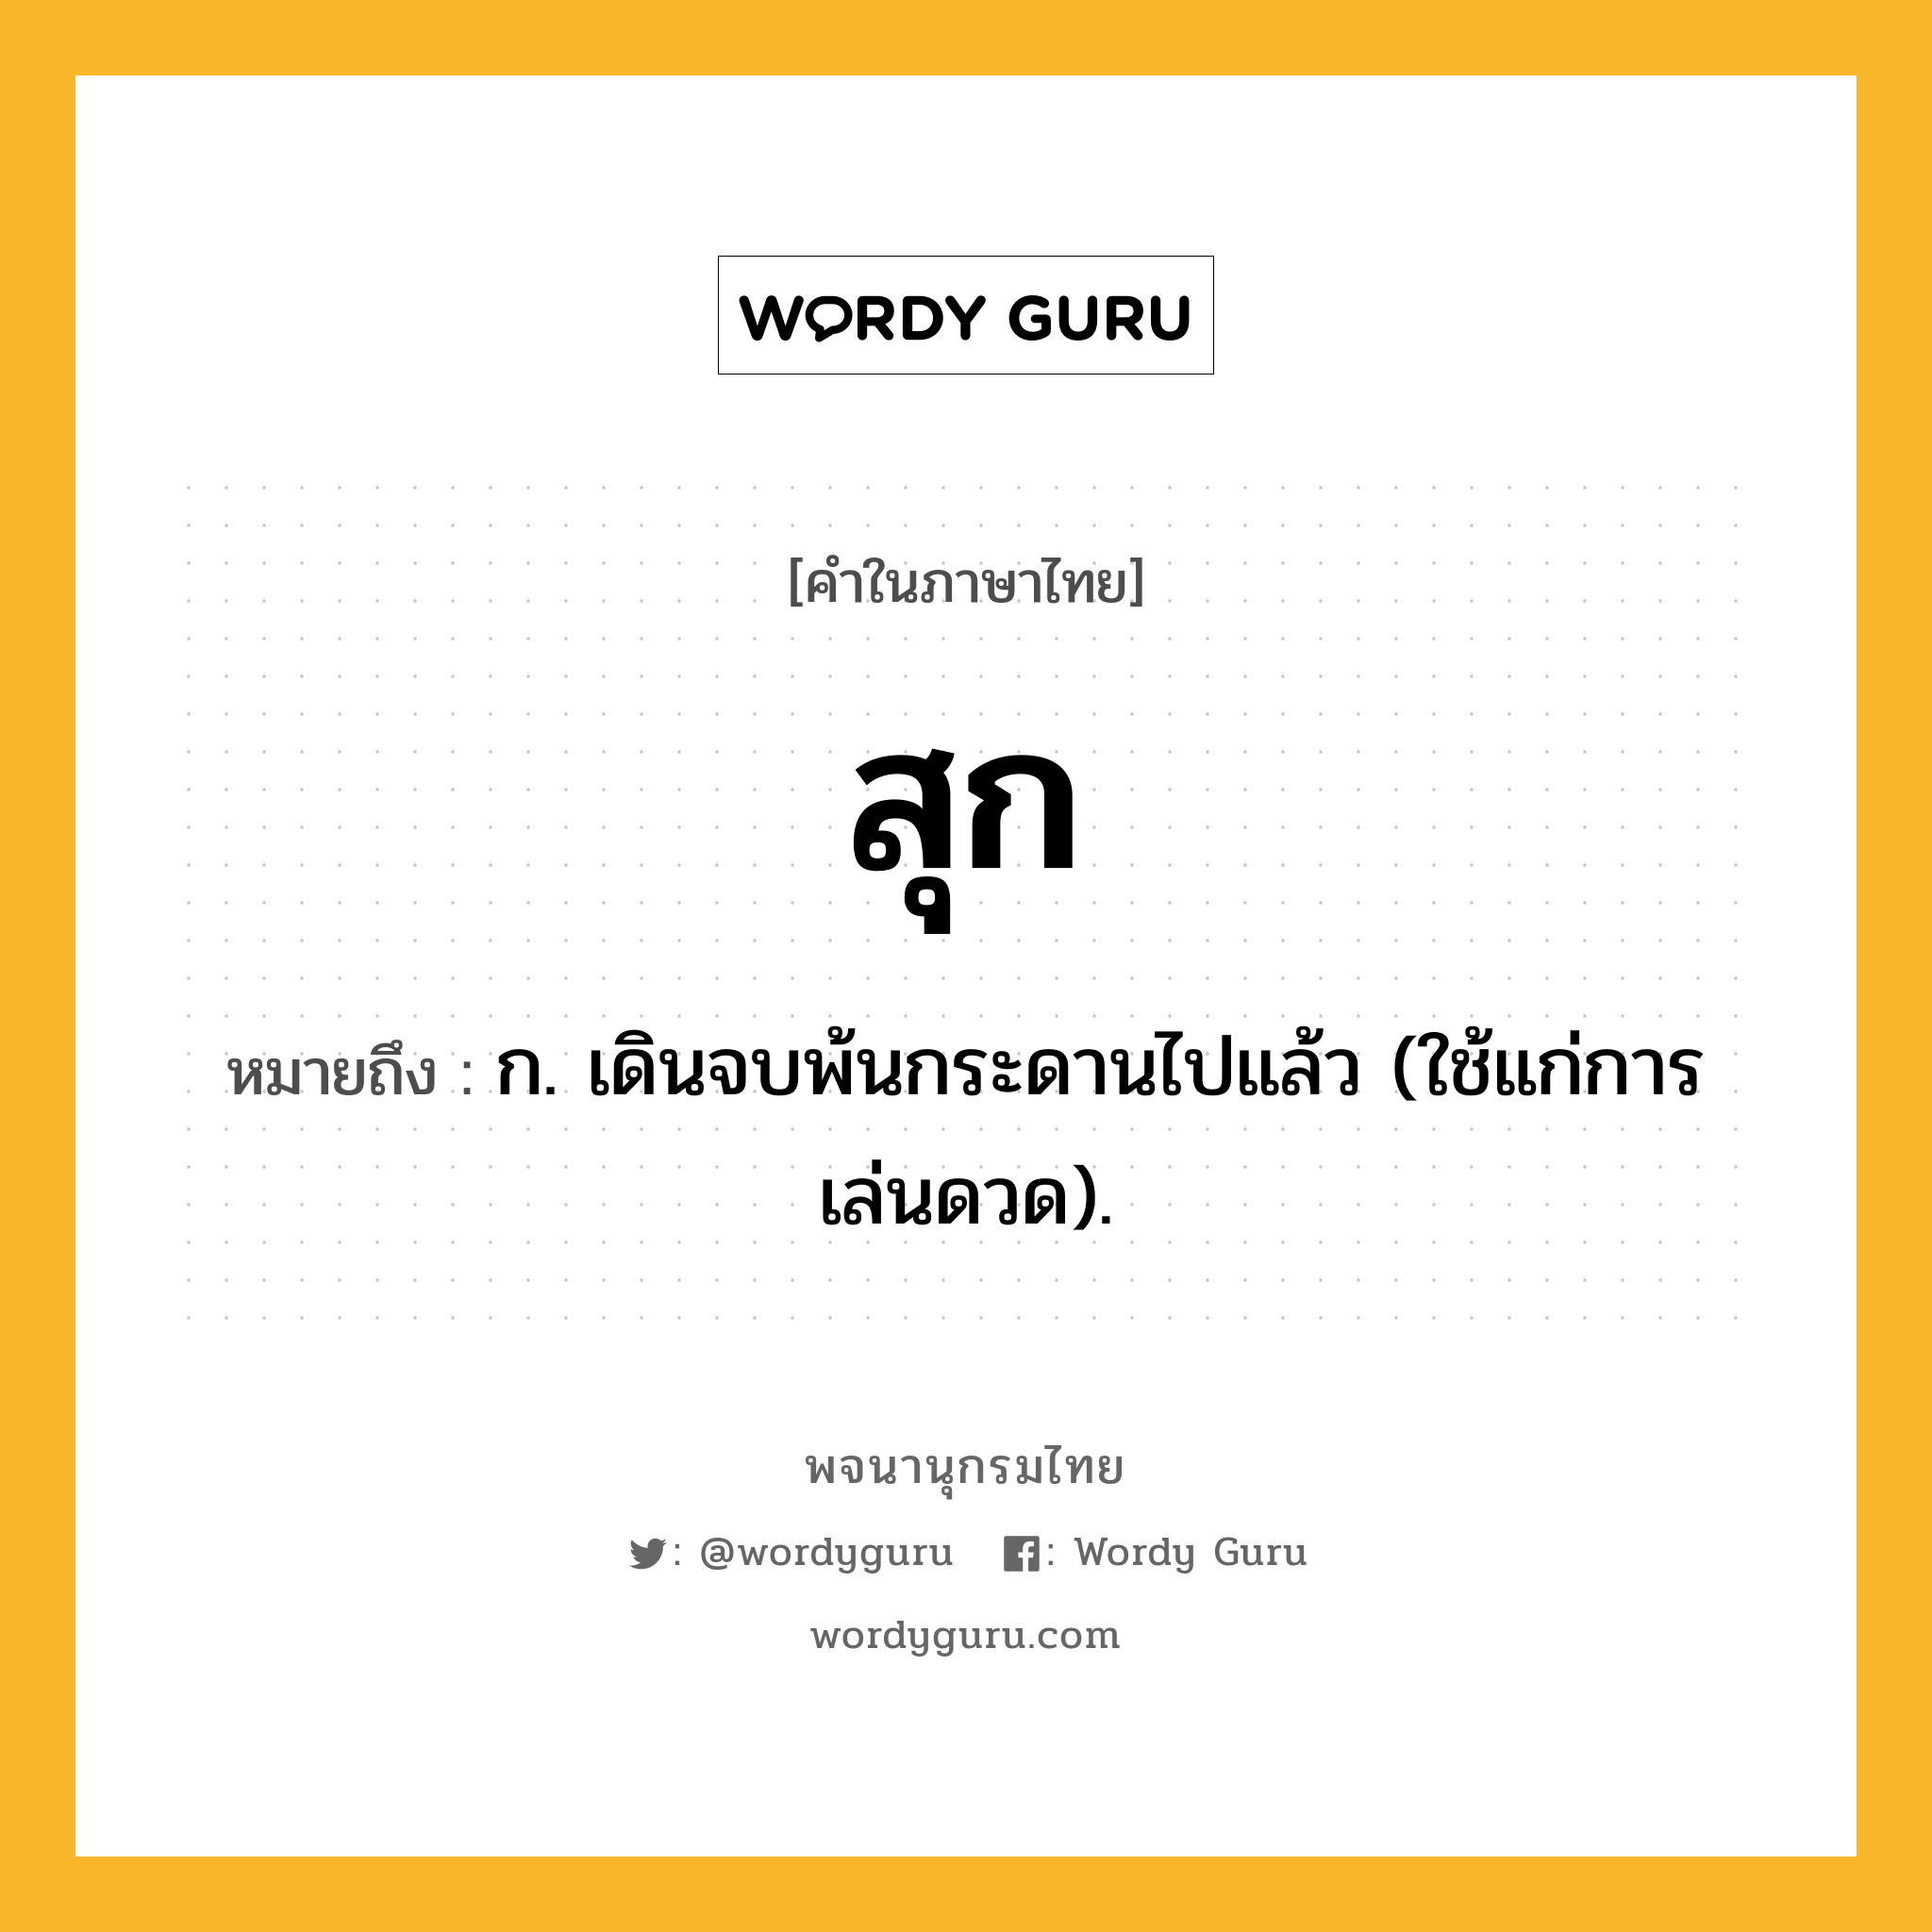 สุก ความหมาย หมายถึงอะไร?, คำในภาษาไทย สุก หมายถึง ก. เดินจบพ้นกระดานไปแล้ว (ใช้แก่การเล่นดวด).